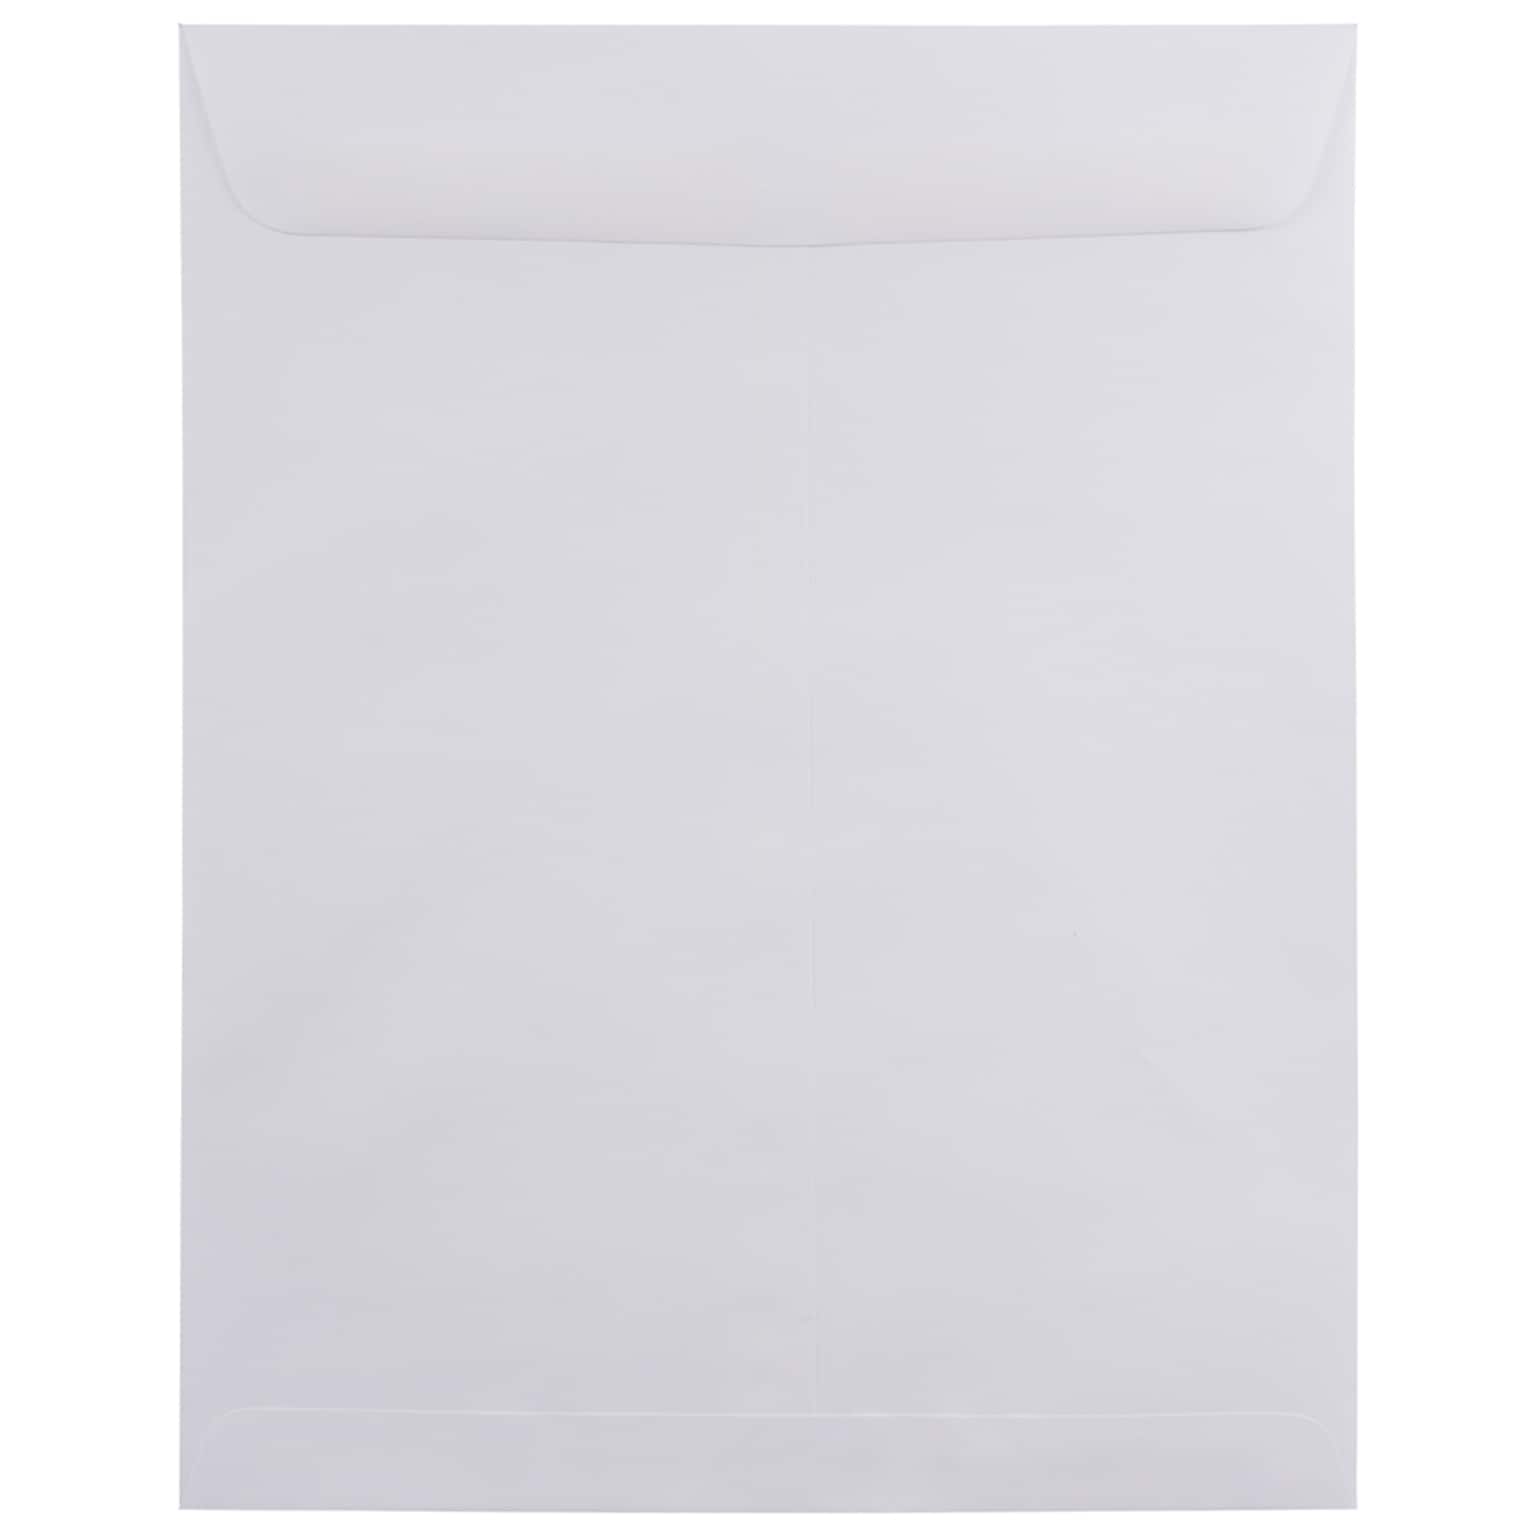 JAM Paper Open End Catalog Envelope, 11 1/2 x 14 1/2, White, 25/Pack (1623201)